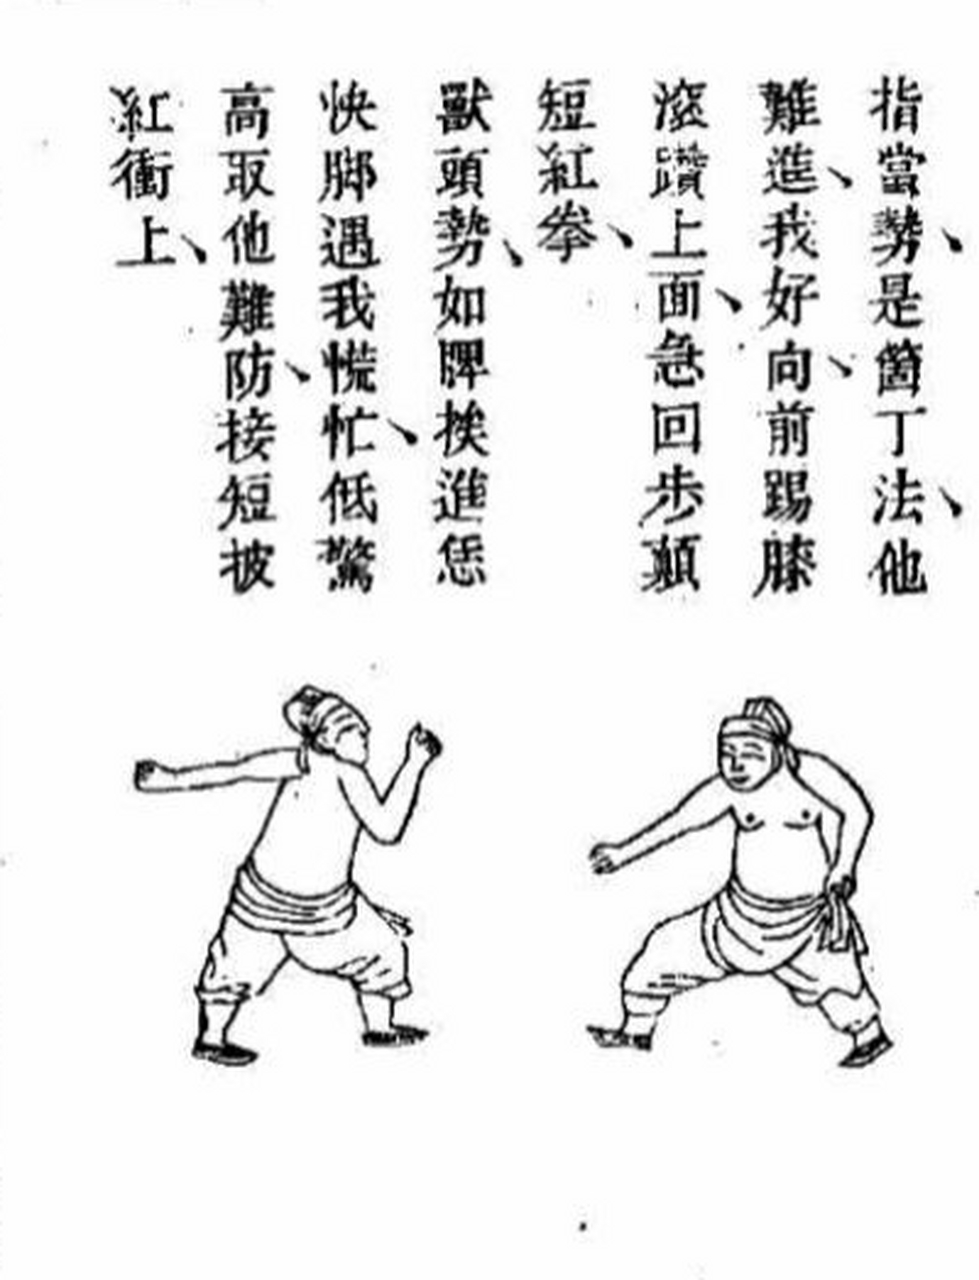 传统武术拳种:南兵拳 南兵拳作为浙江地区的一门地方拳种,其历史可以